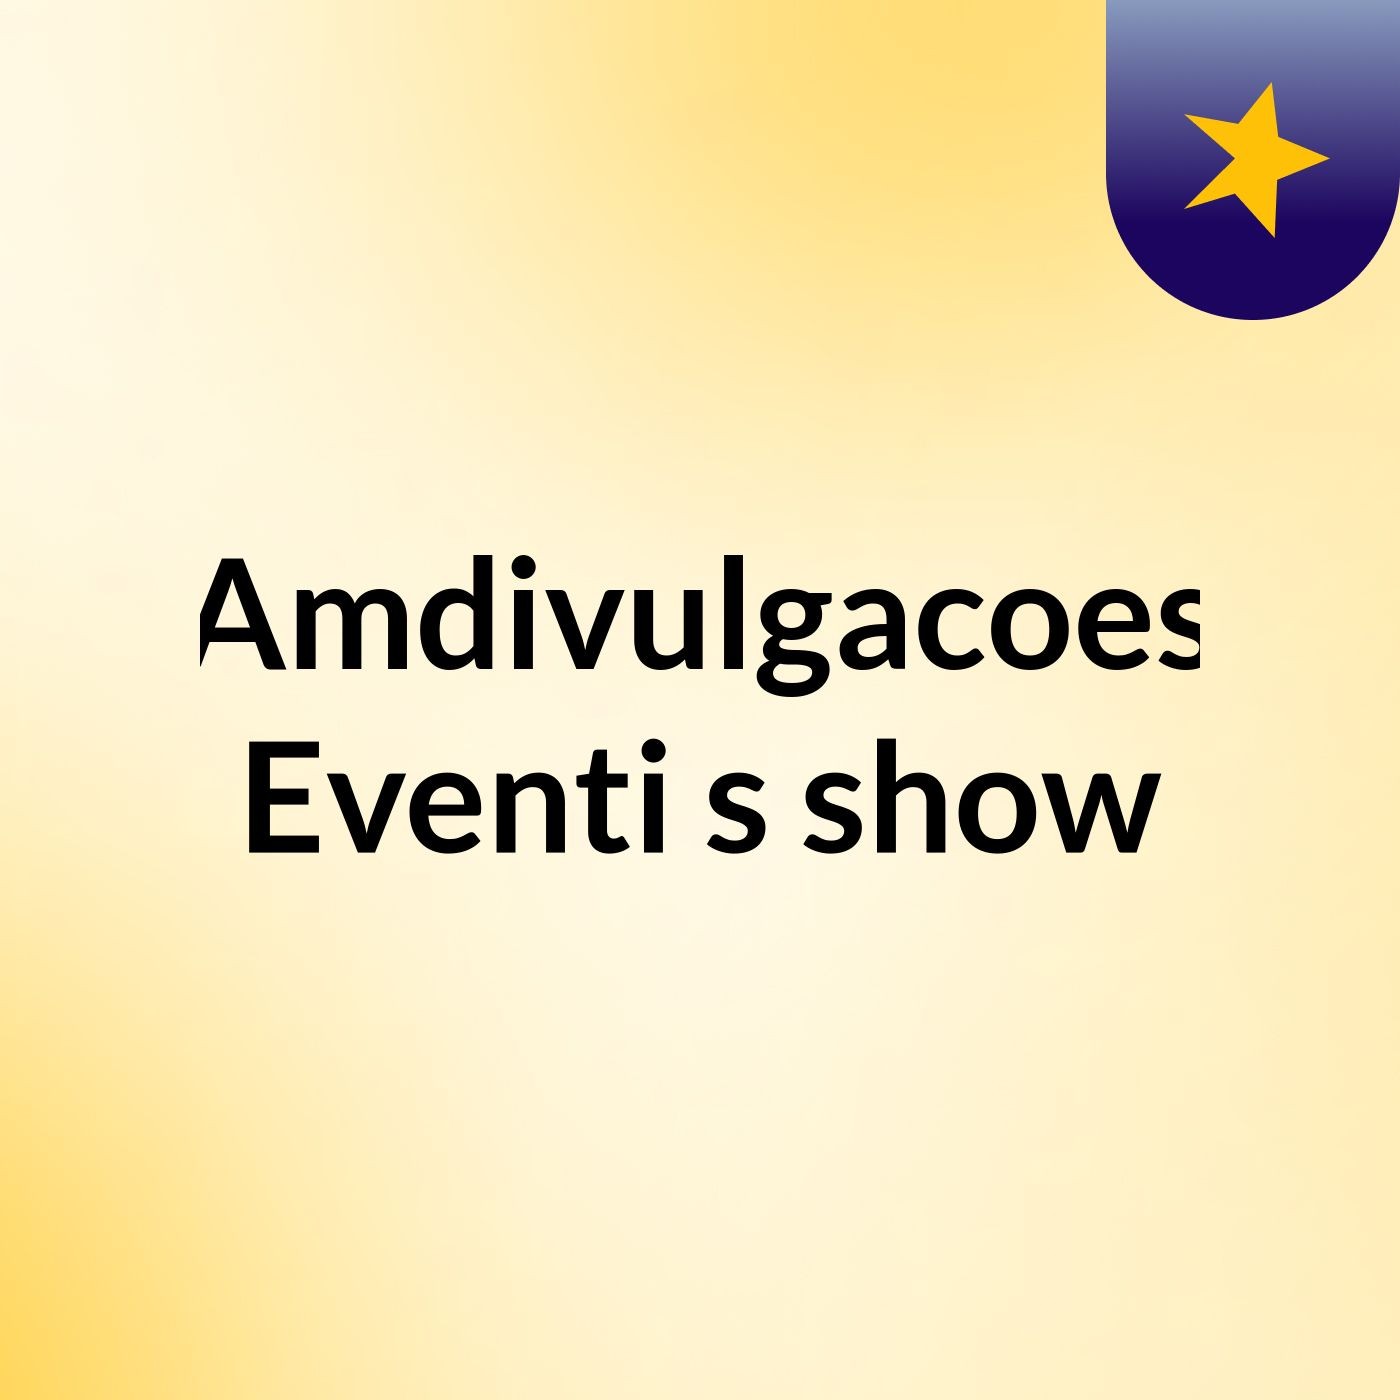 Amdivulgacoes Eventi's show